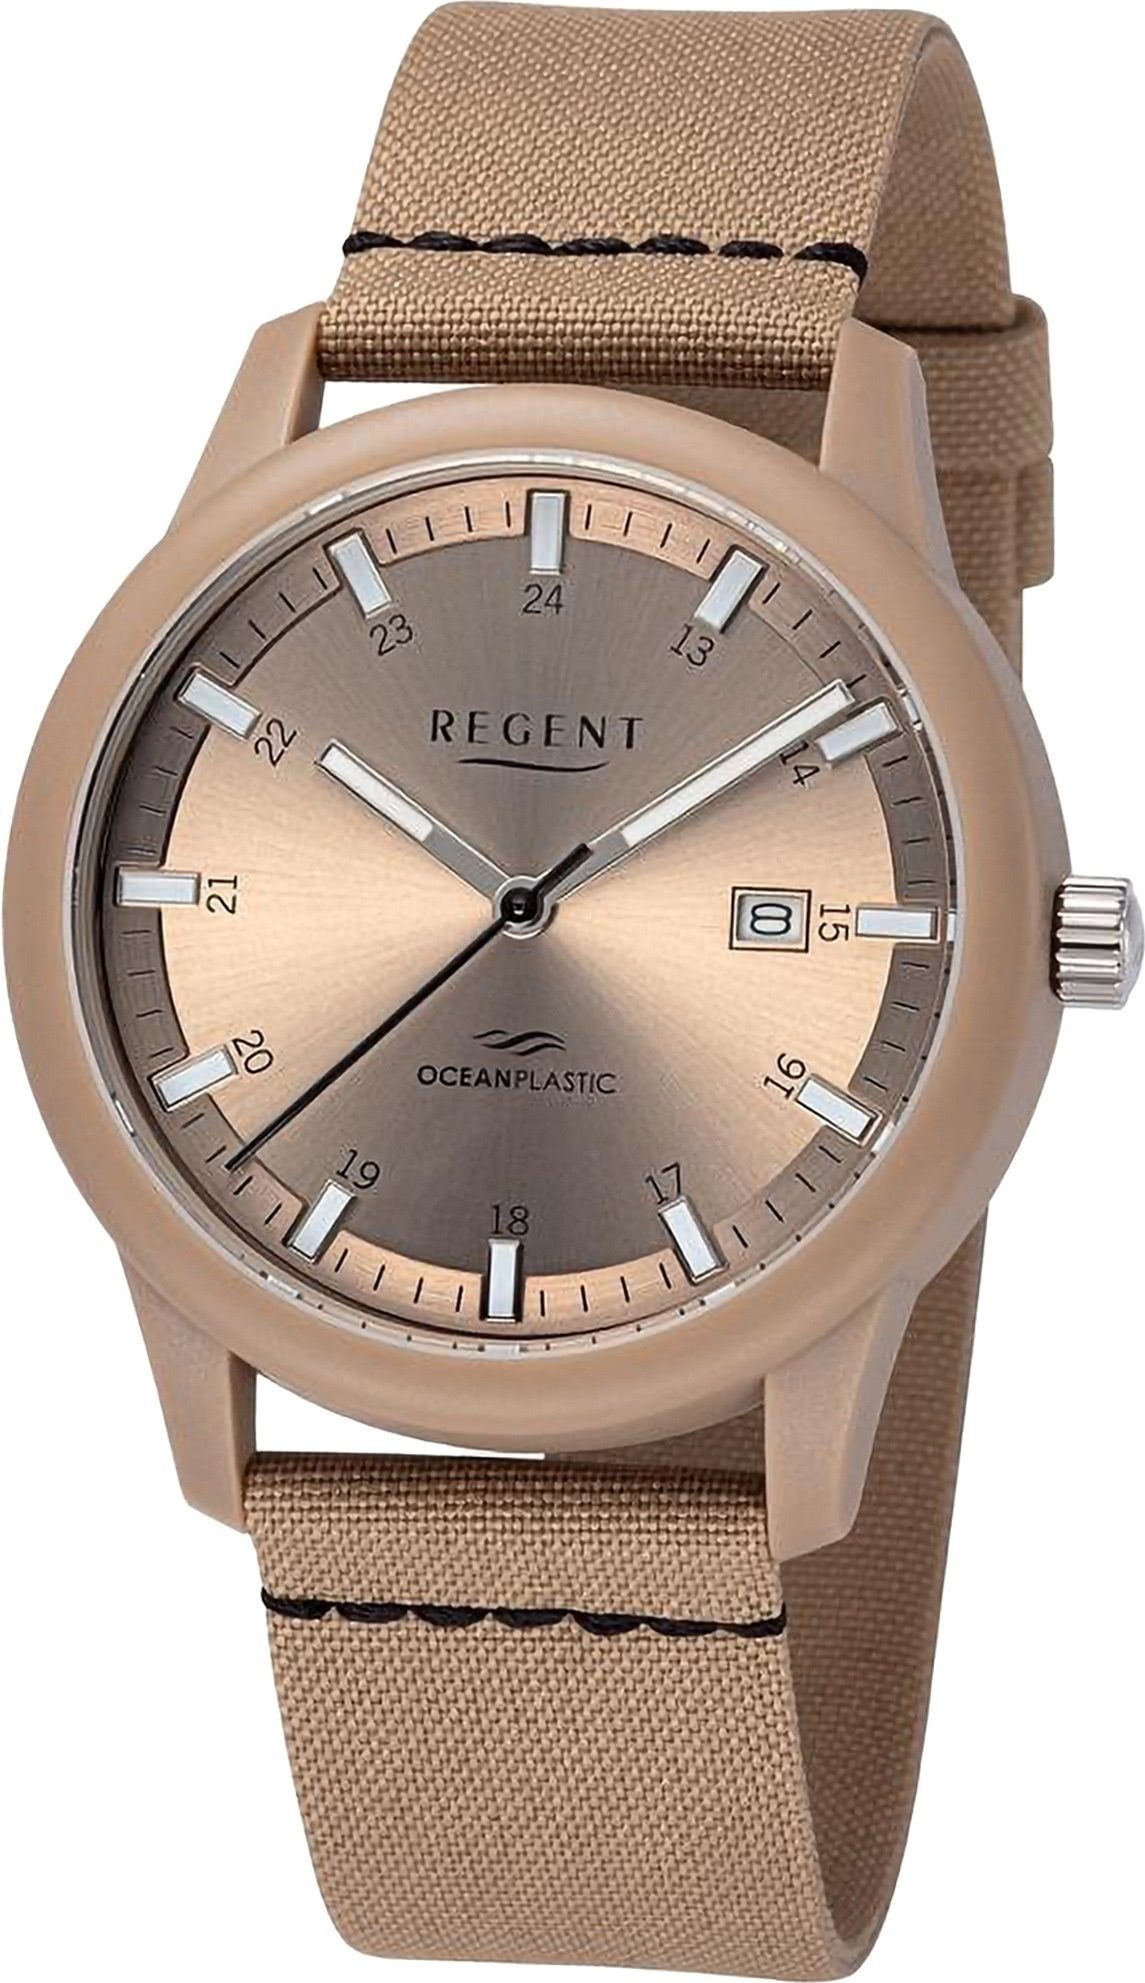 Analog, Nylonarmband Regent (ca. Armbanduhr rund, groß 40mm), Herren Quarzuhr Regent Herren Armbanduhr extra